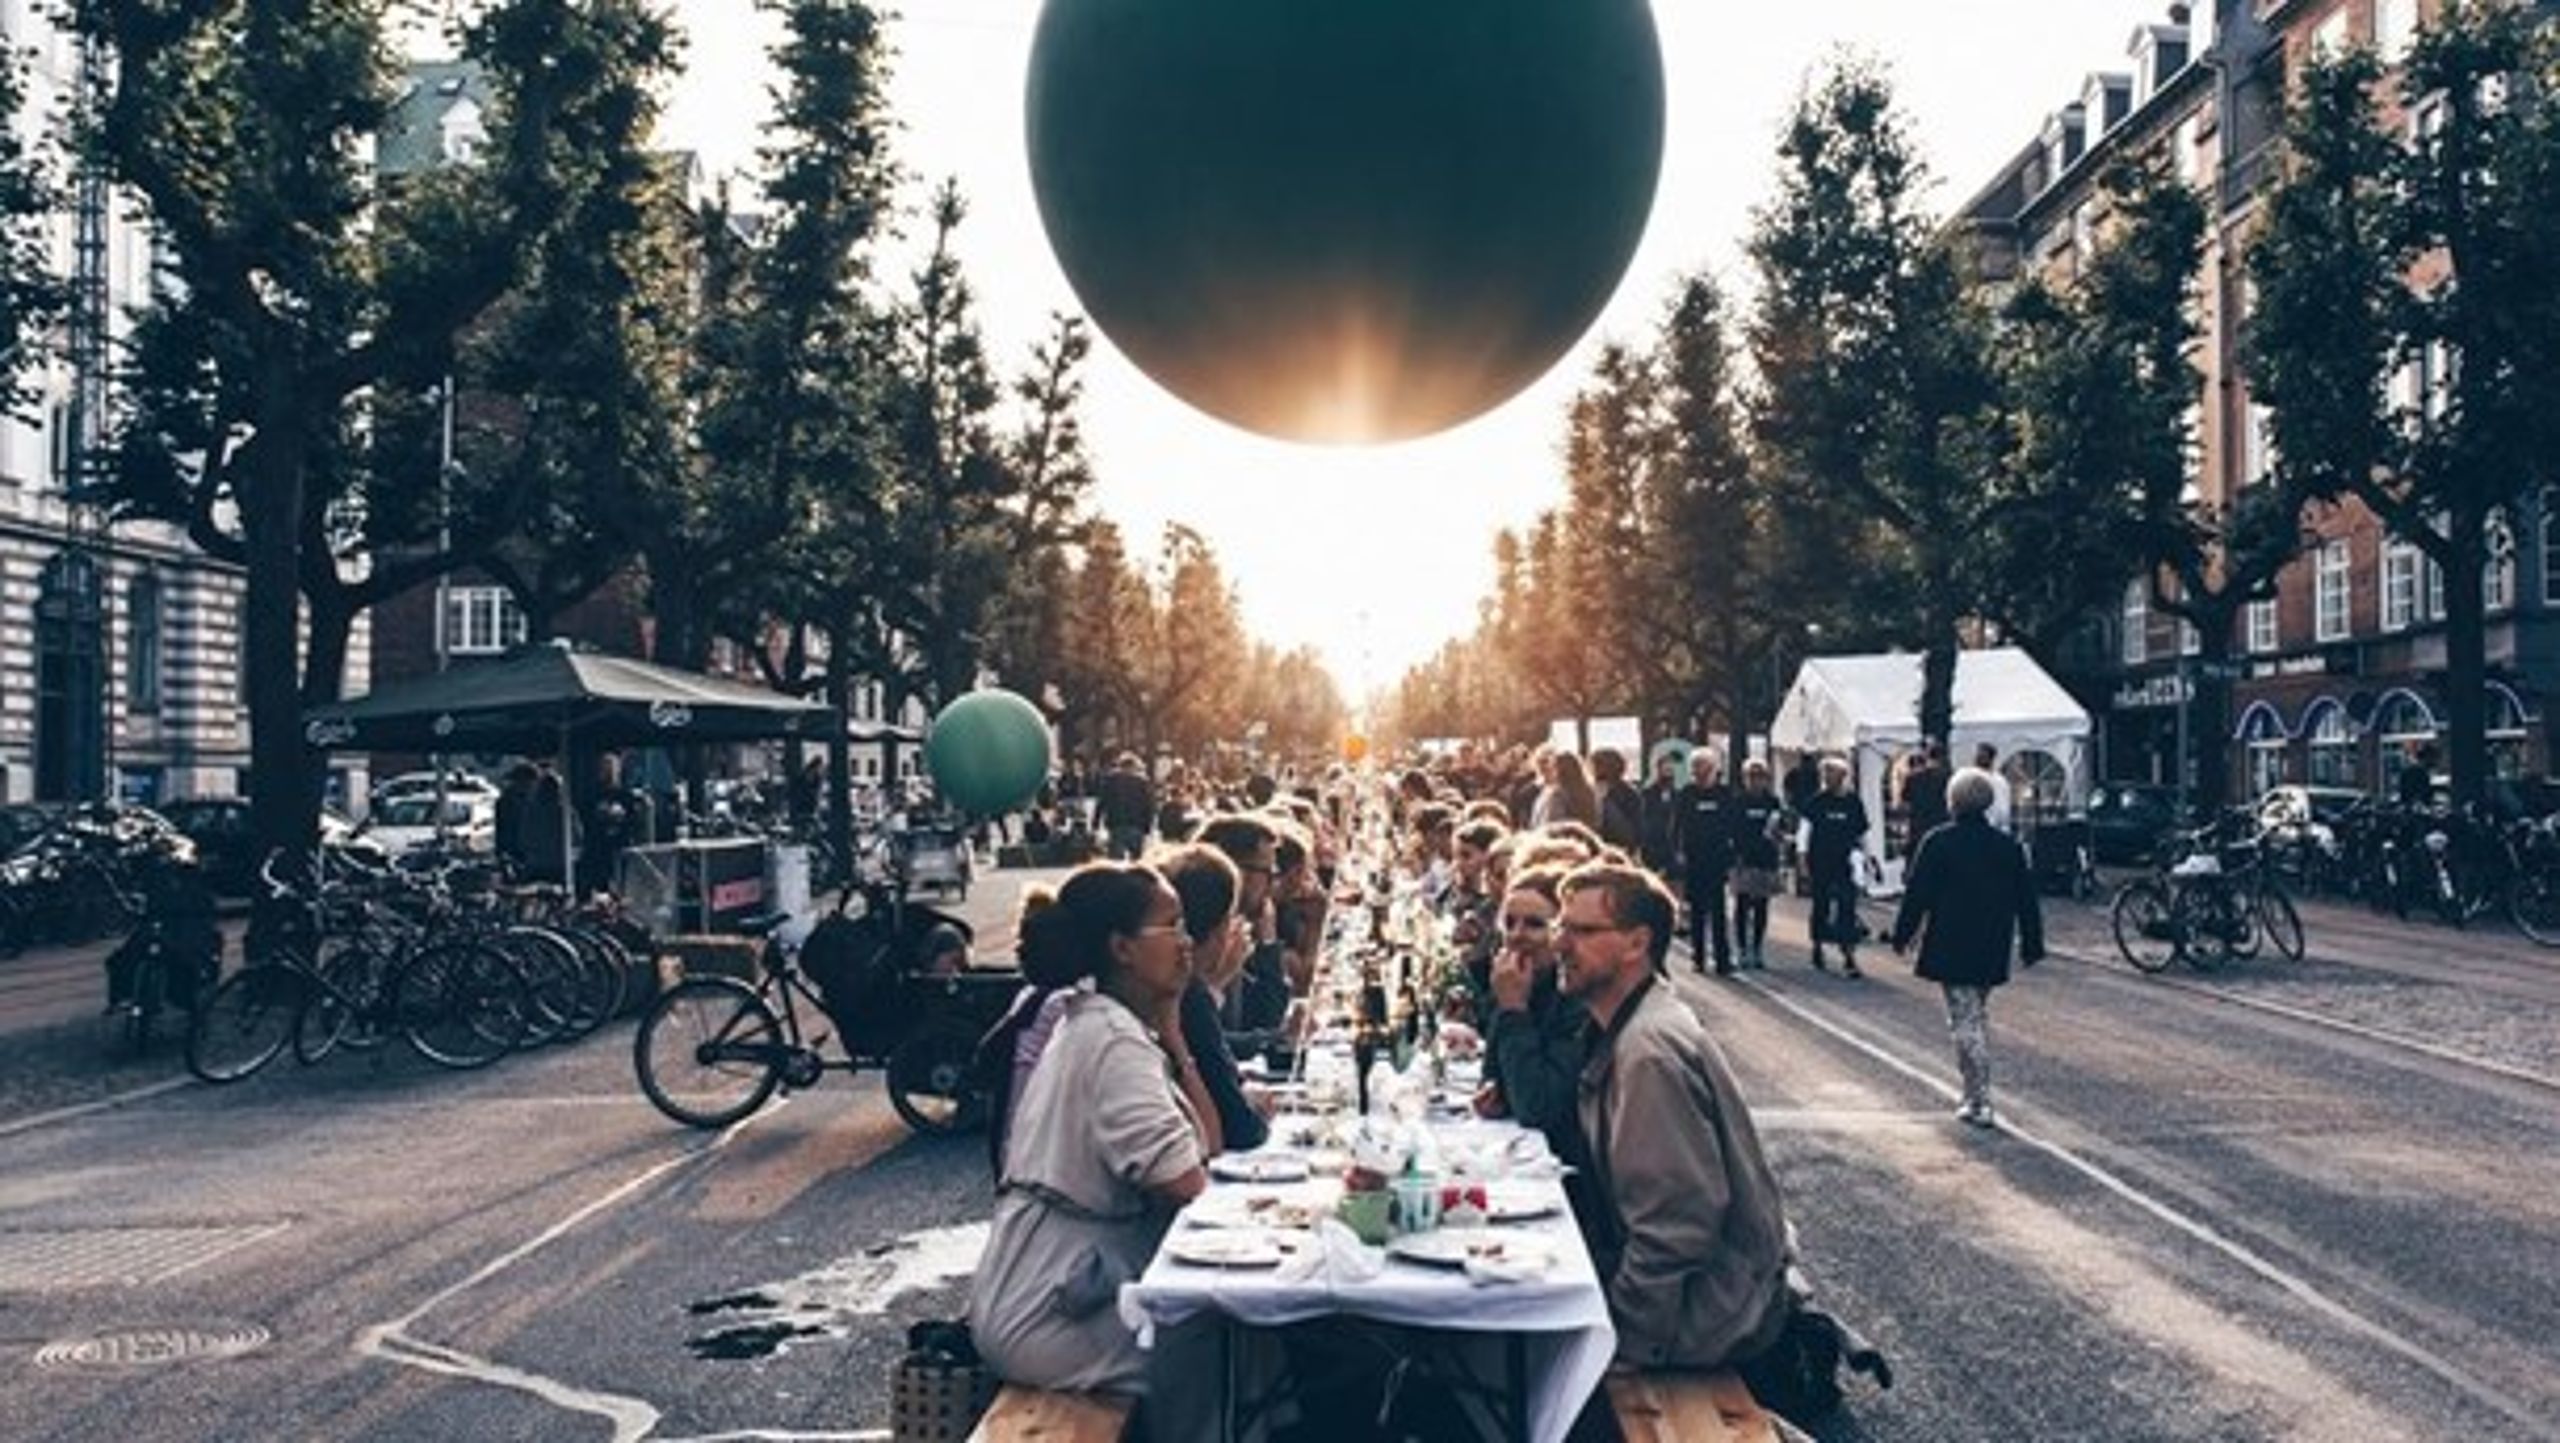 Copenhagen Cooking &amp; Food Festival løber af stablen denne uge, hvor miljø- og fødevareministeren også afholder fødevaretopmødet World Food Summit.